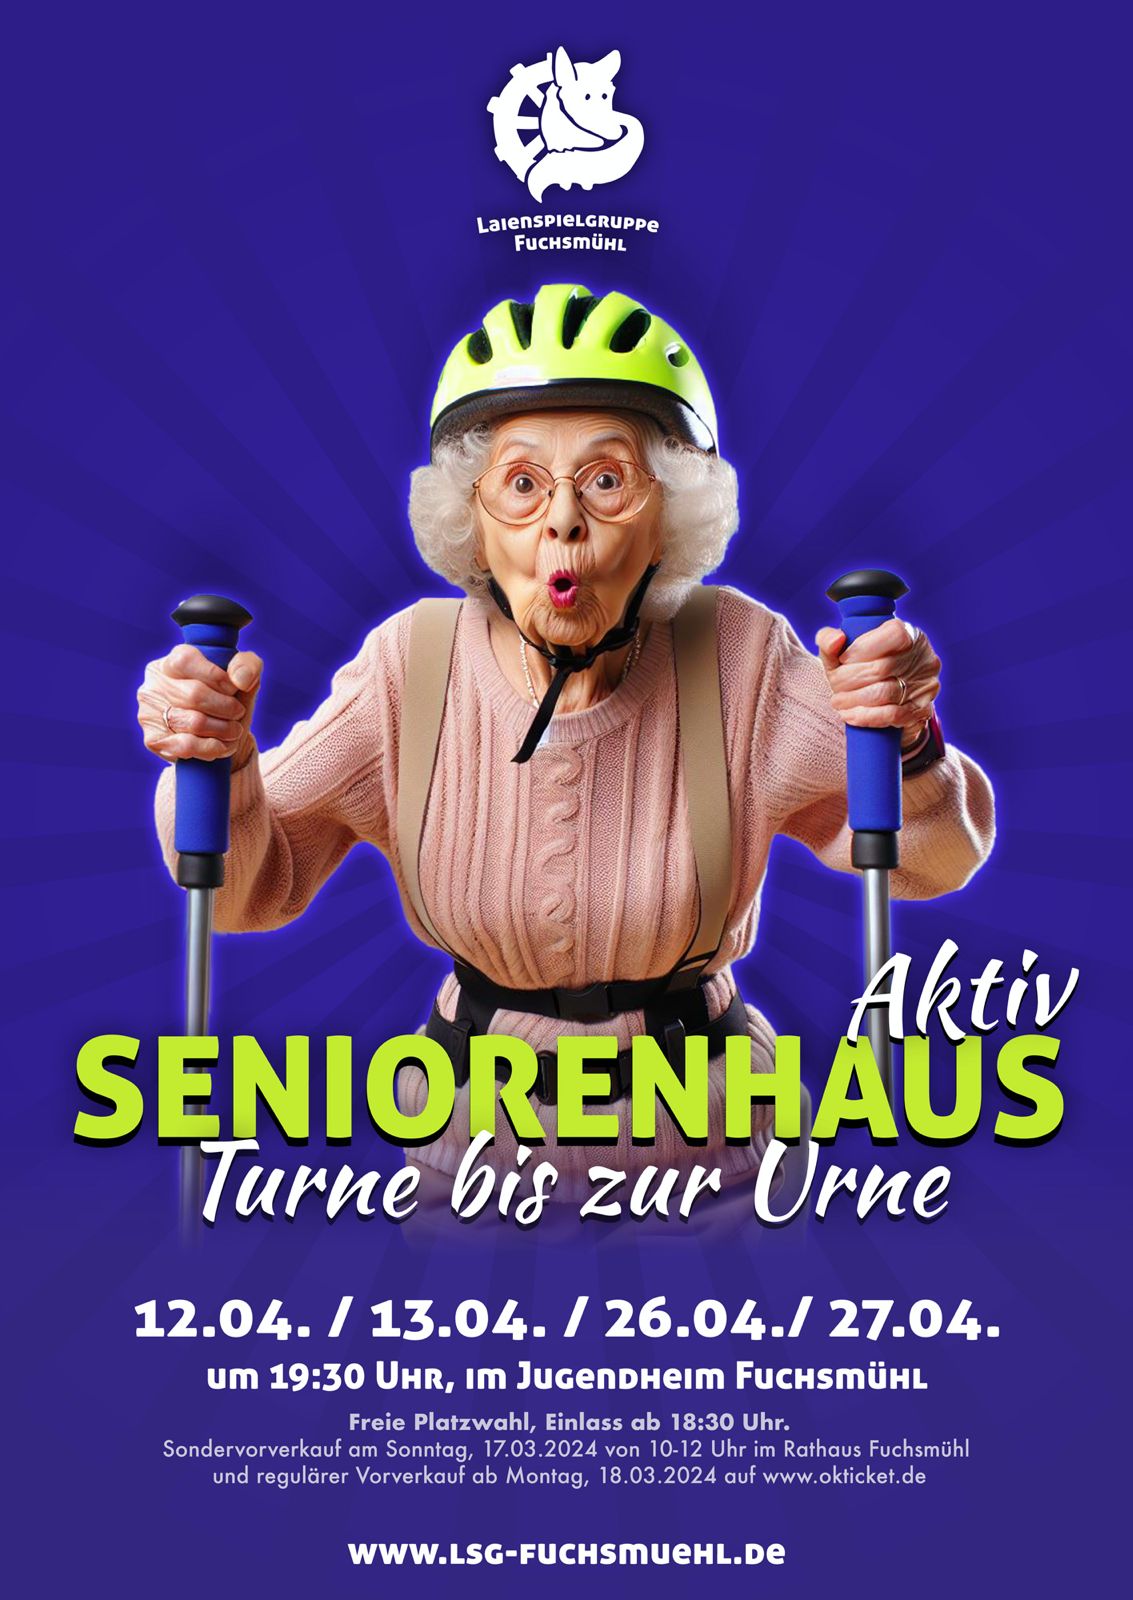 Seniorenhaus Aktiv - Turne bis zur Urne 